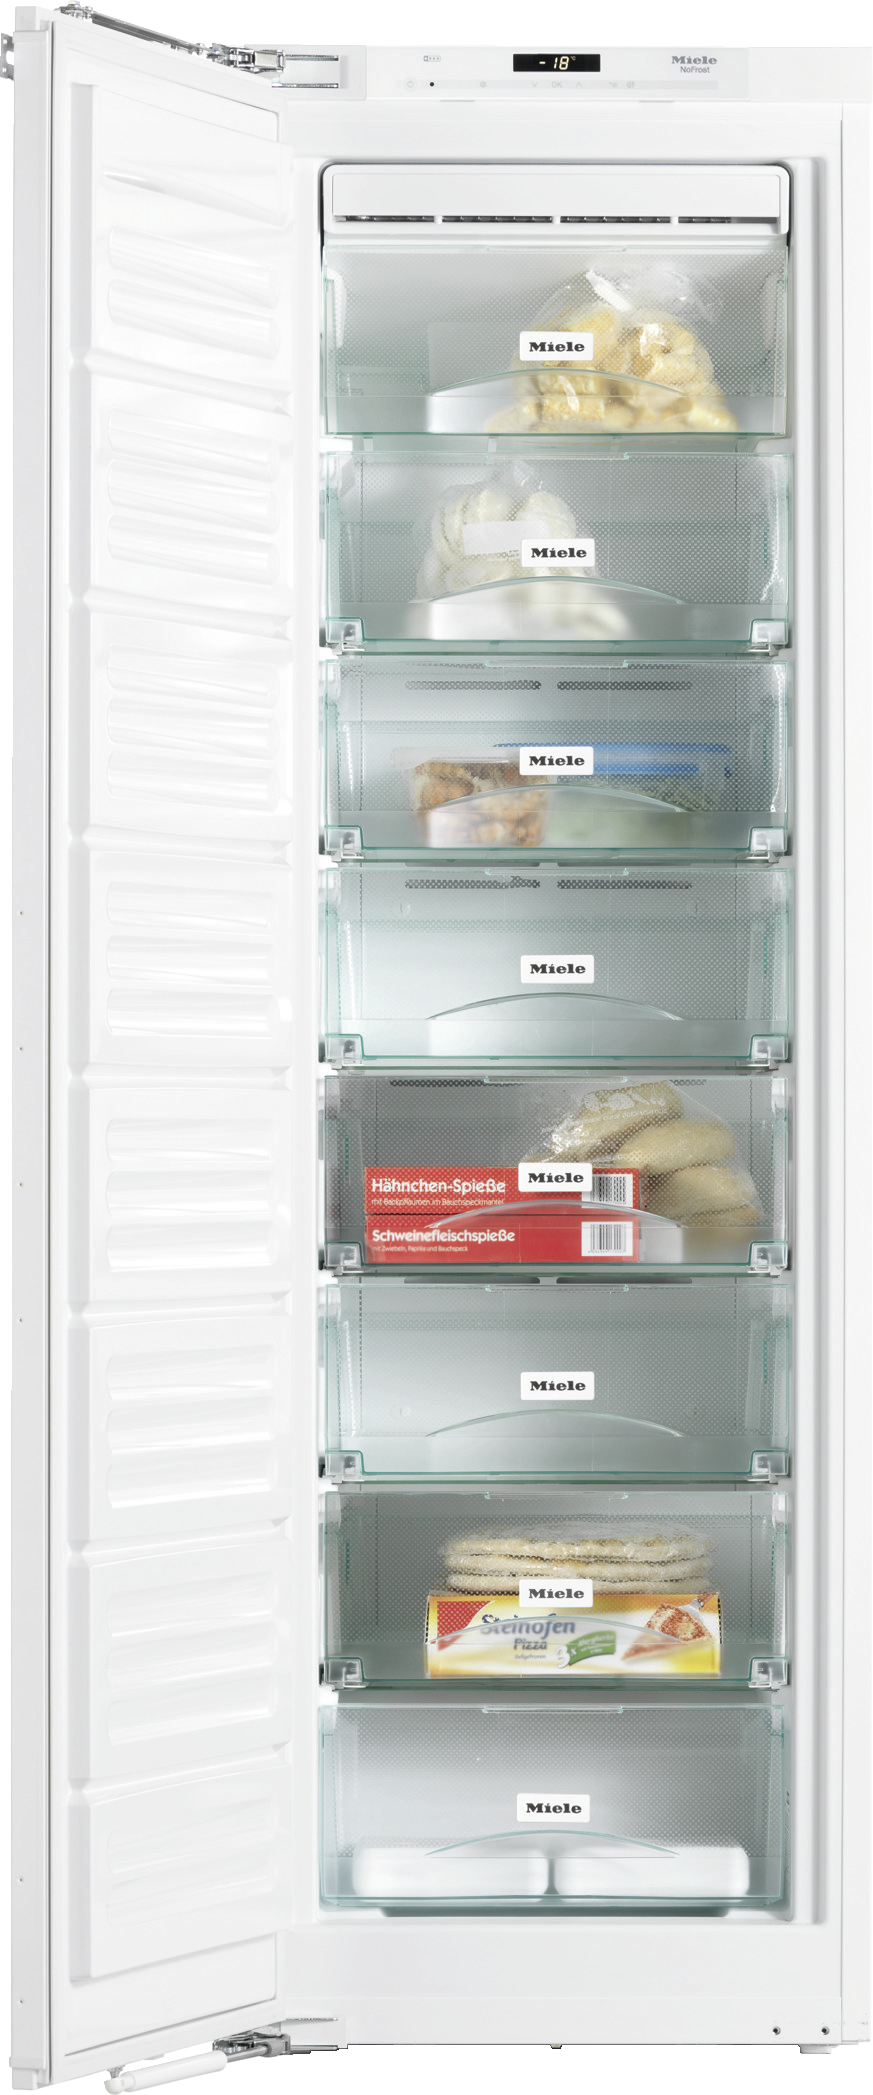 Refrigerare - FNS 37405 i - 1